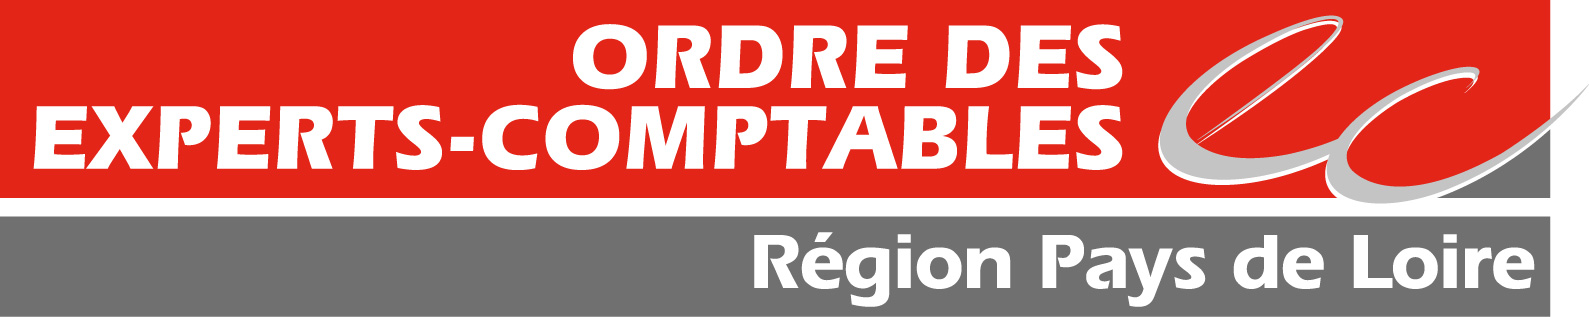 logo_Ordre_des_experts_comptables_pays_loire.jpg